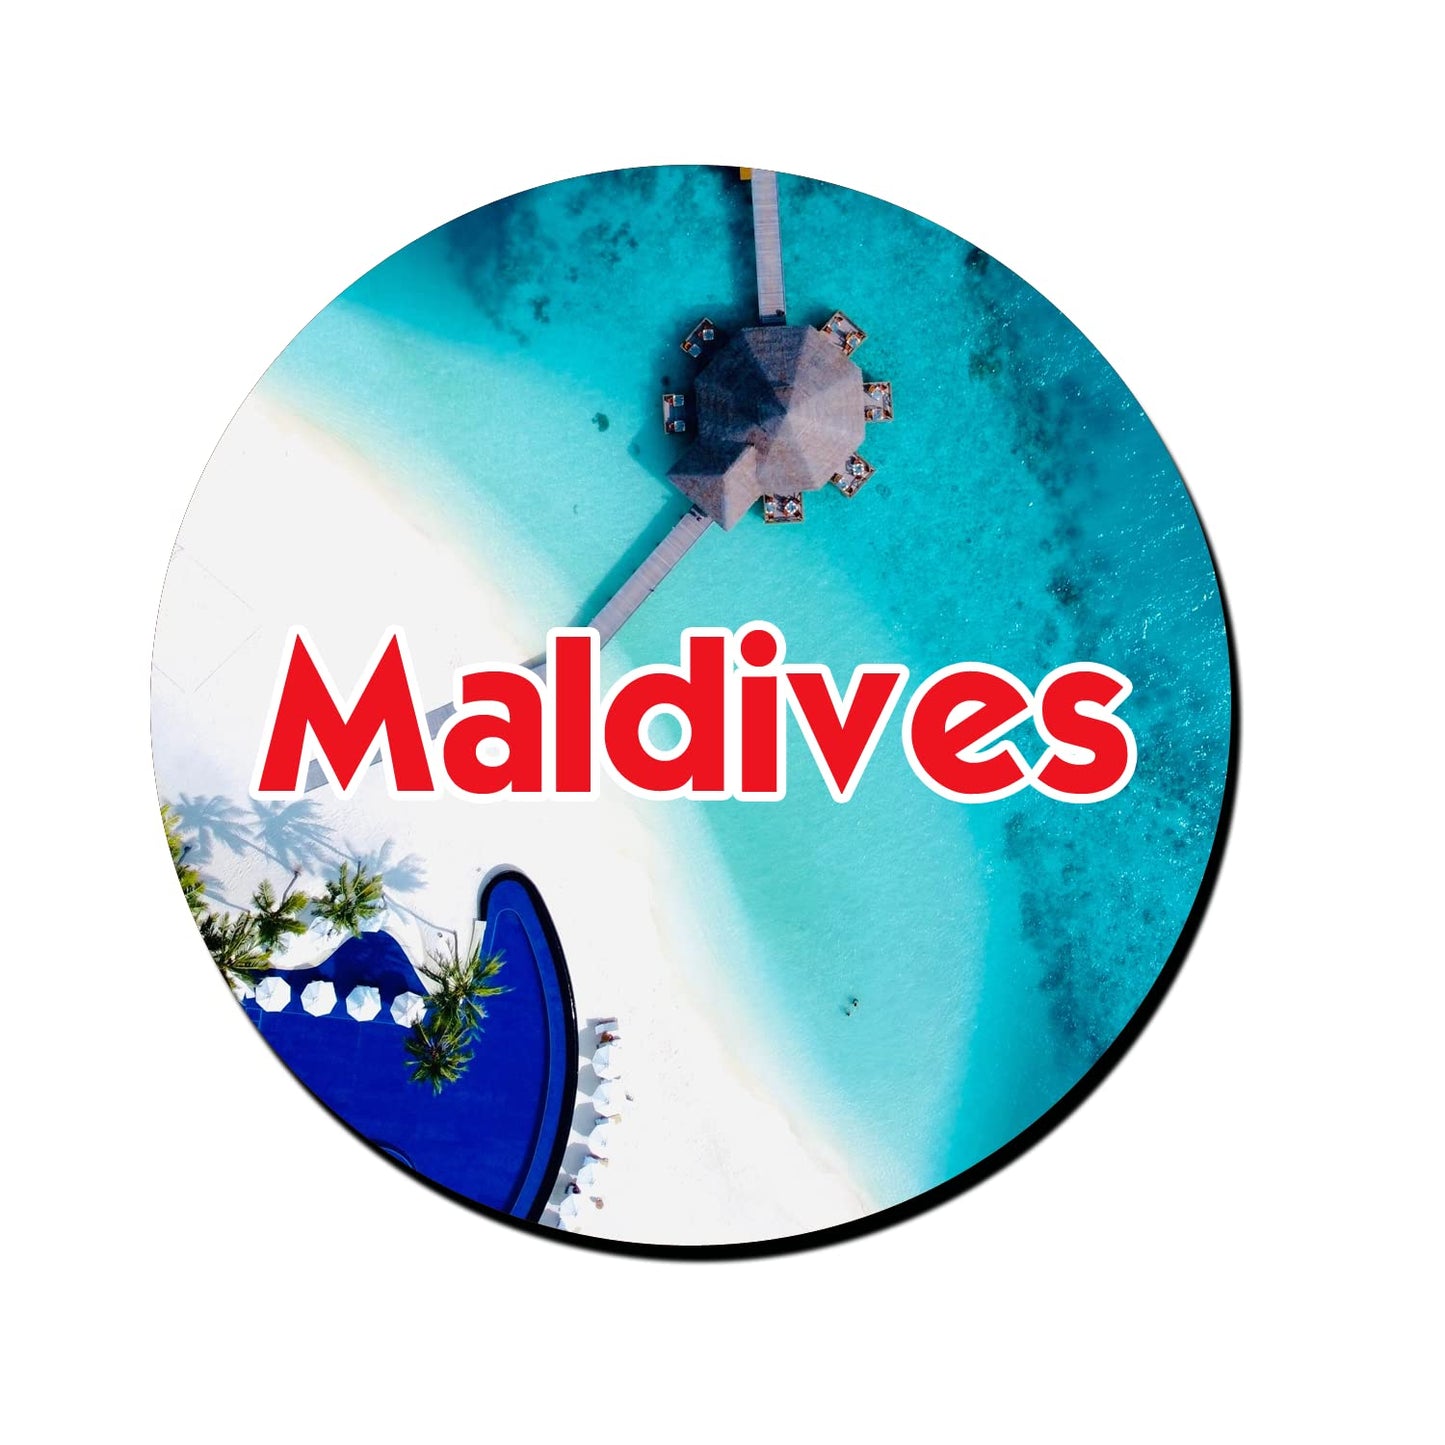 ShopTwiz Maldives Marvelous Decorative Large Fridge Magnet